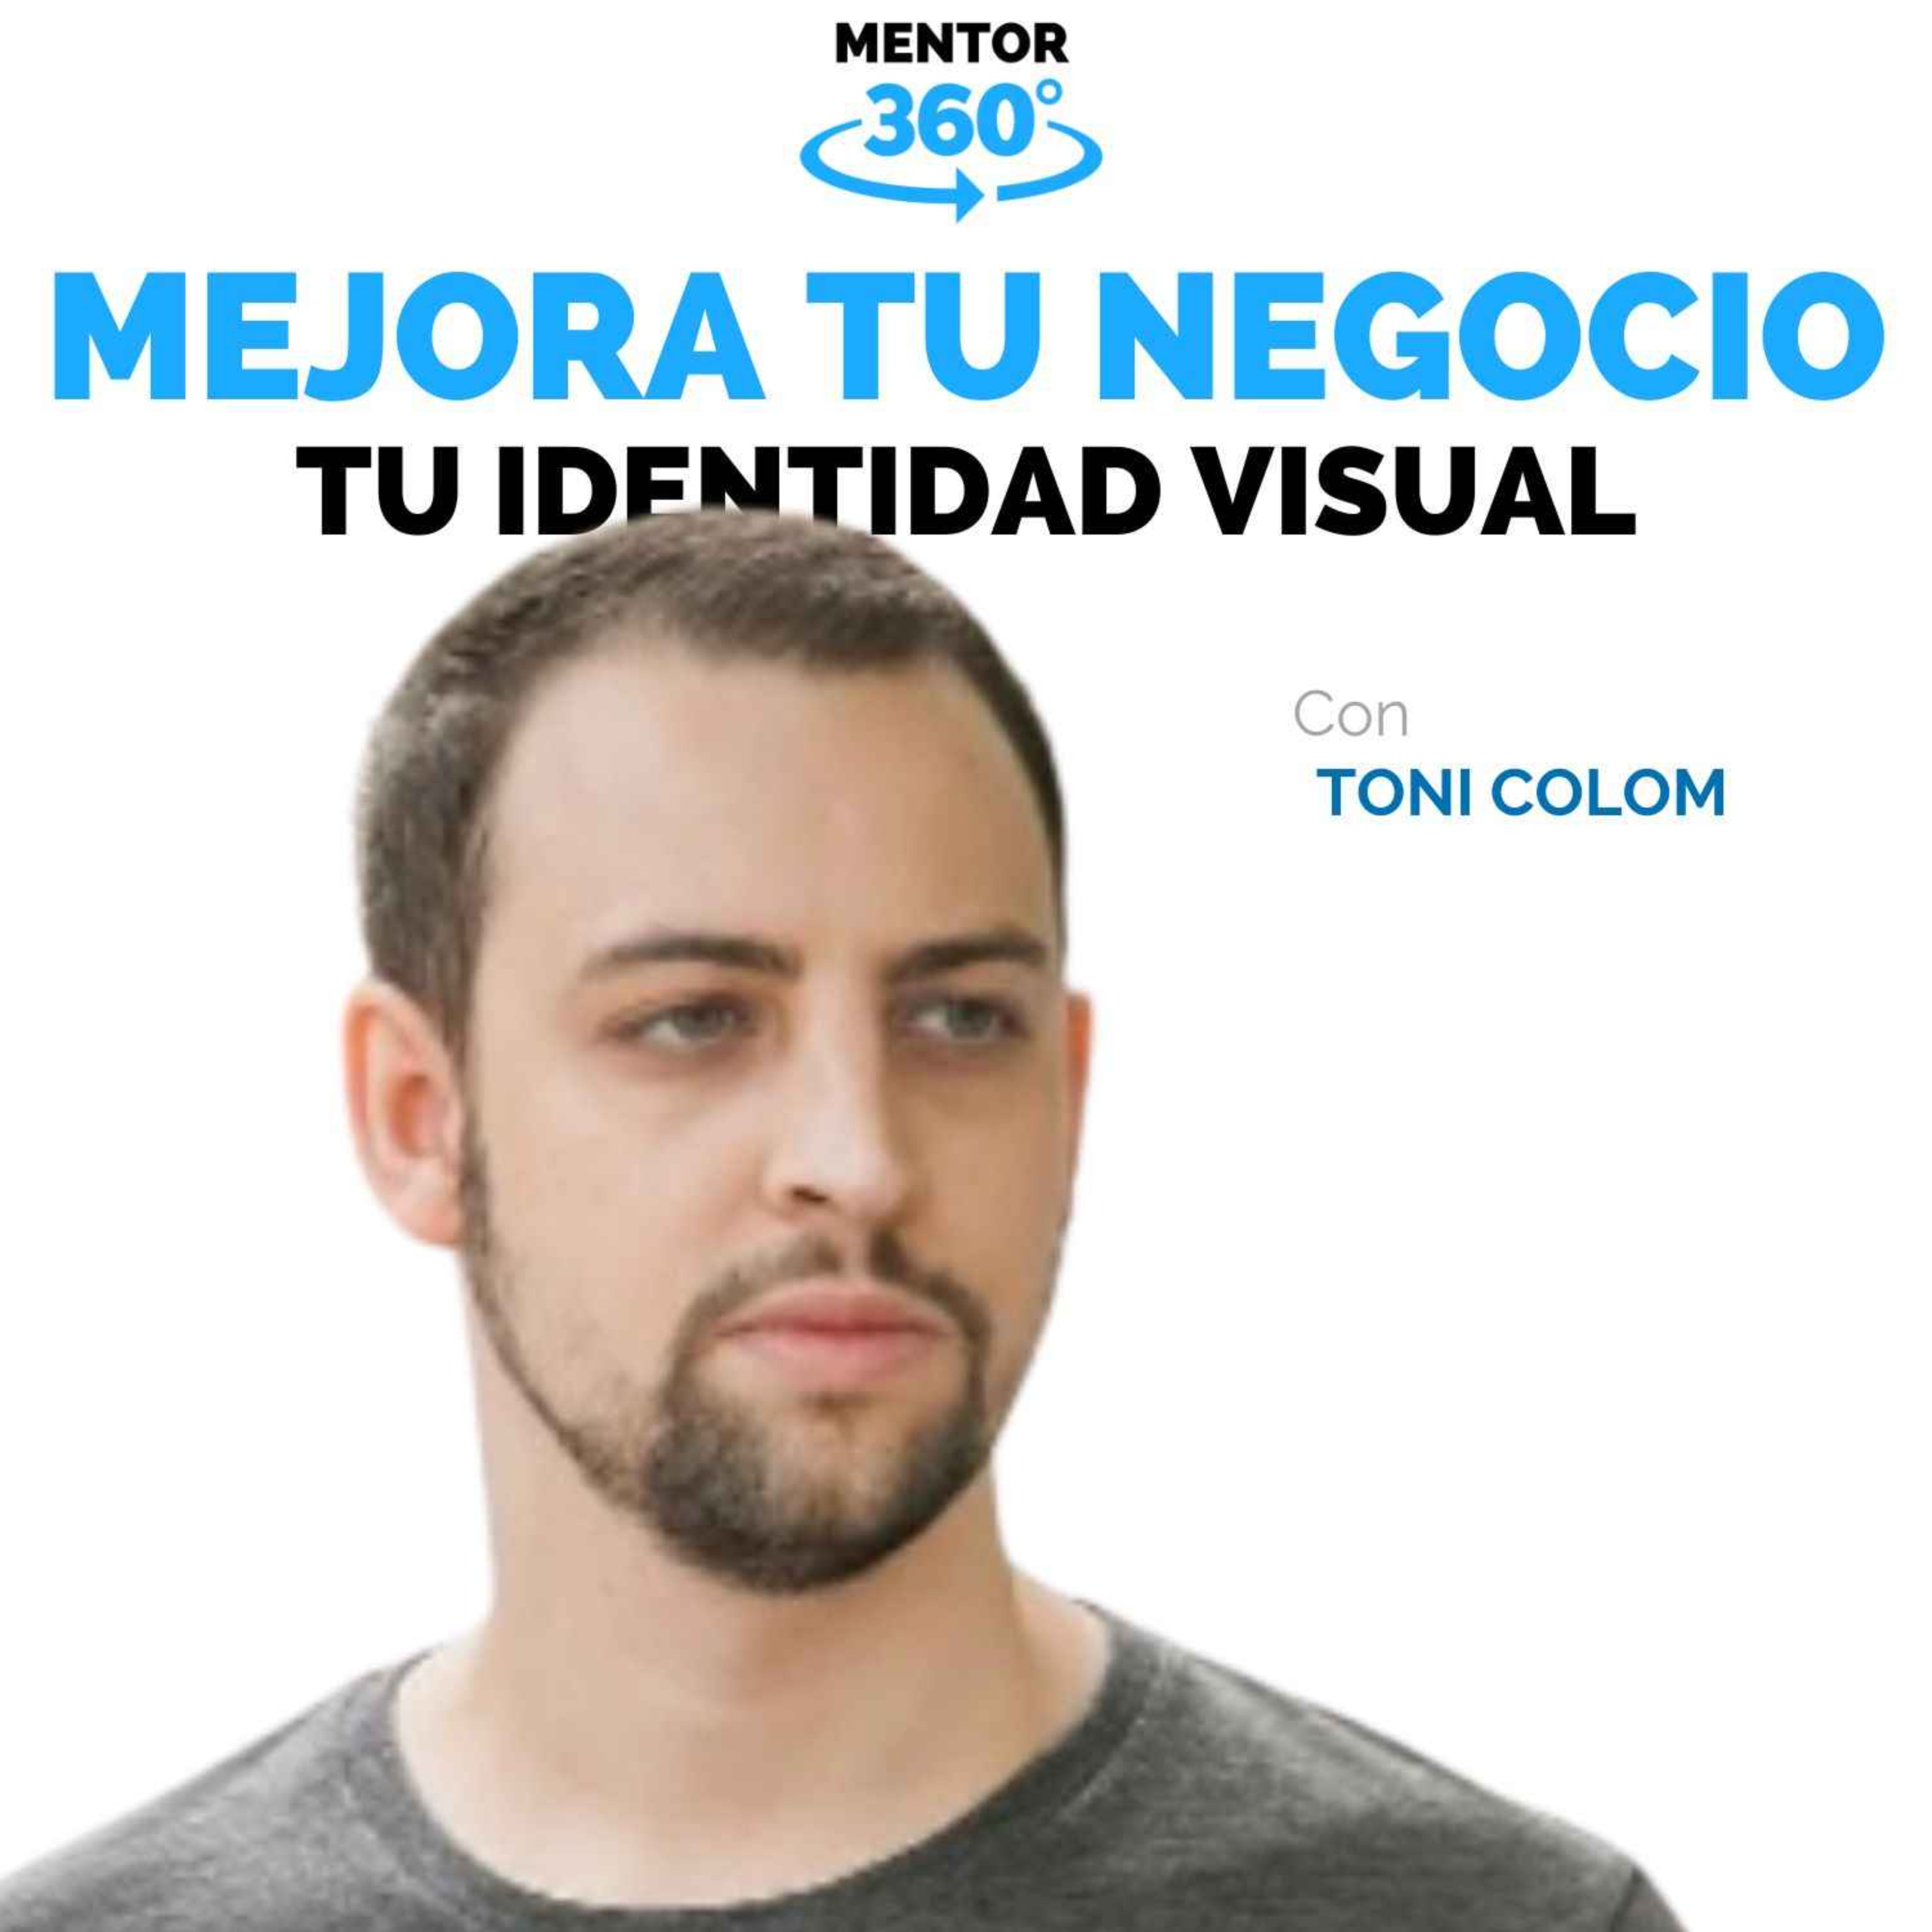 Cómo crear una identidad visual memorable - Toni Colom - Mejora Tu Negocio - MENTOR360